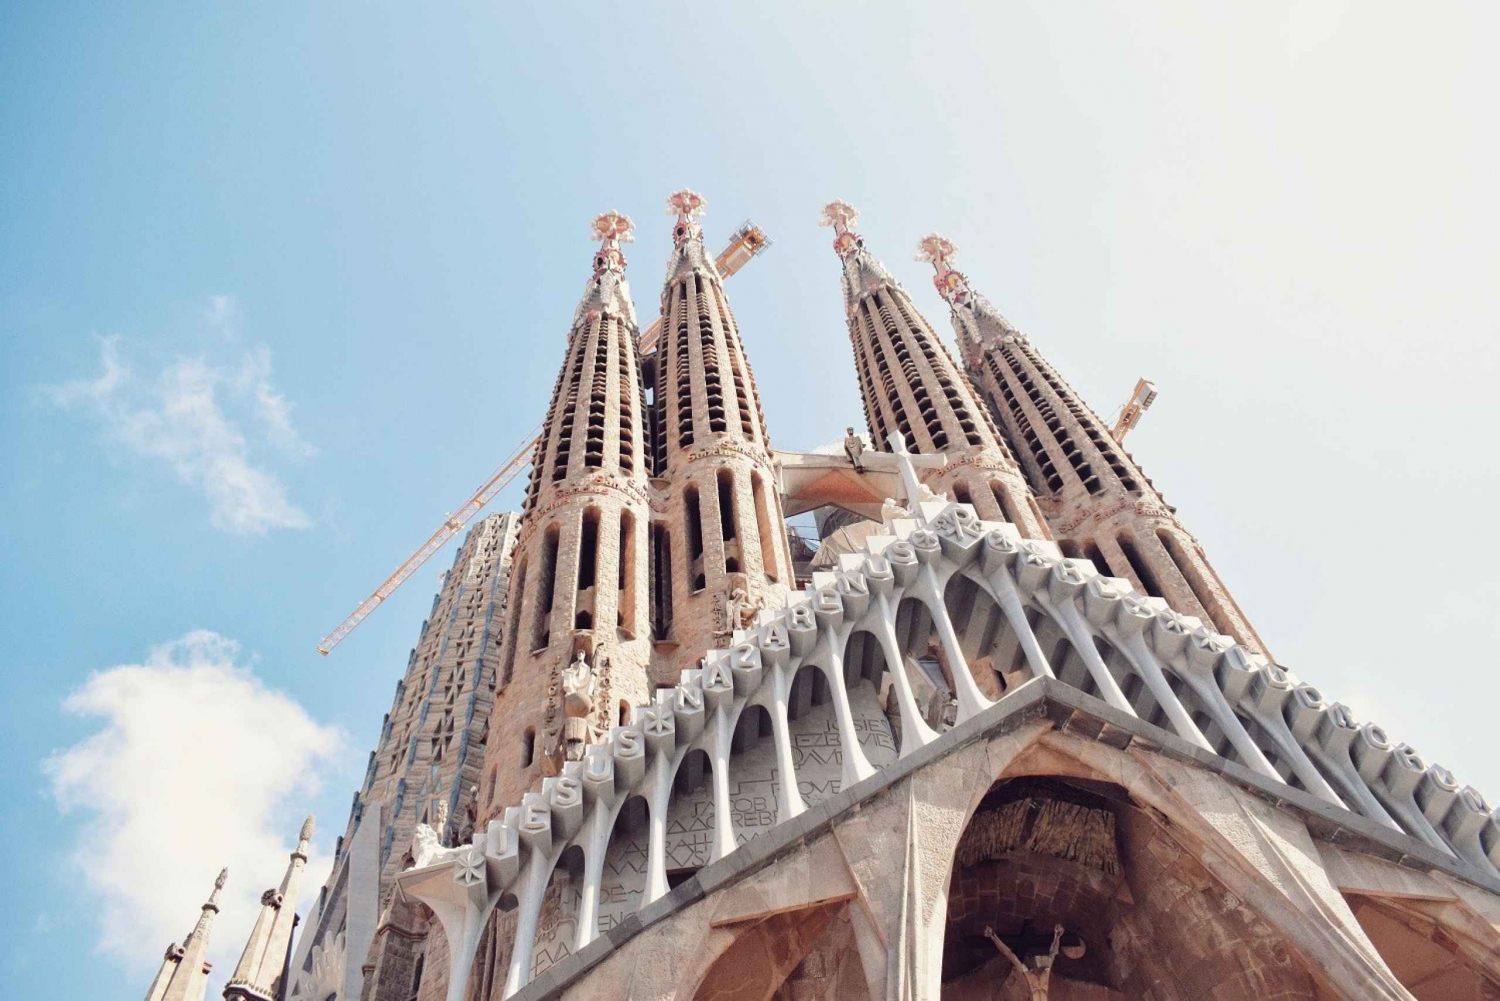 90 minuutin opastettu Sagrada Familia -kierros pikapääsy